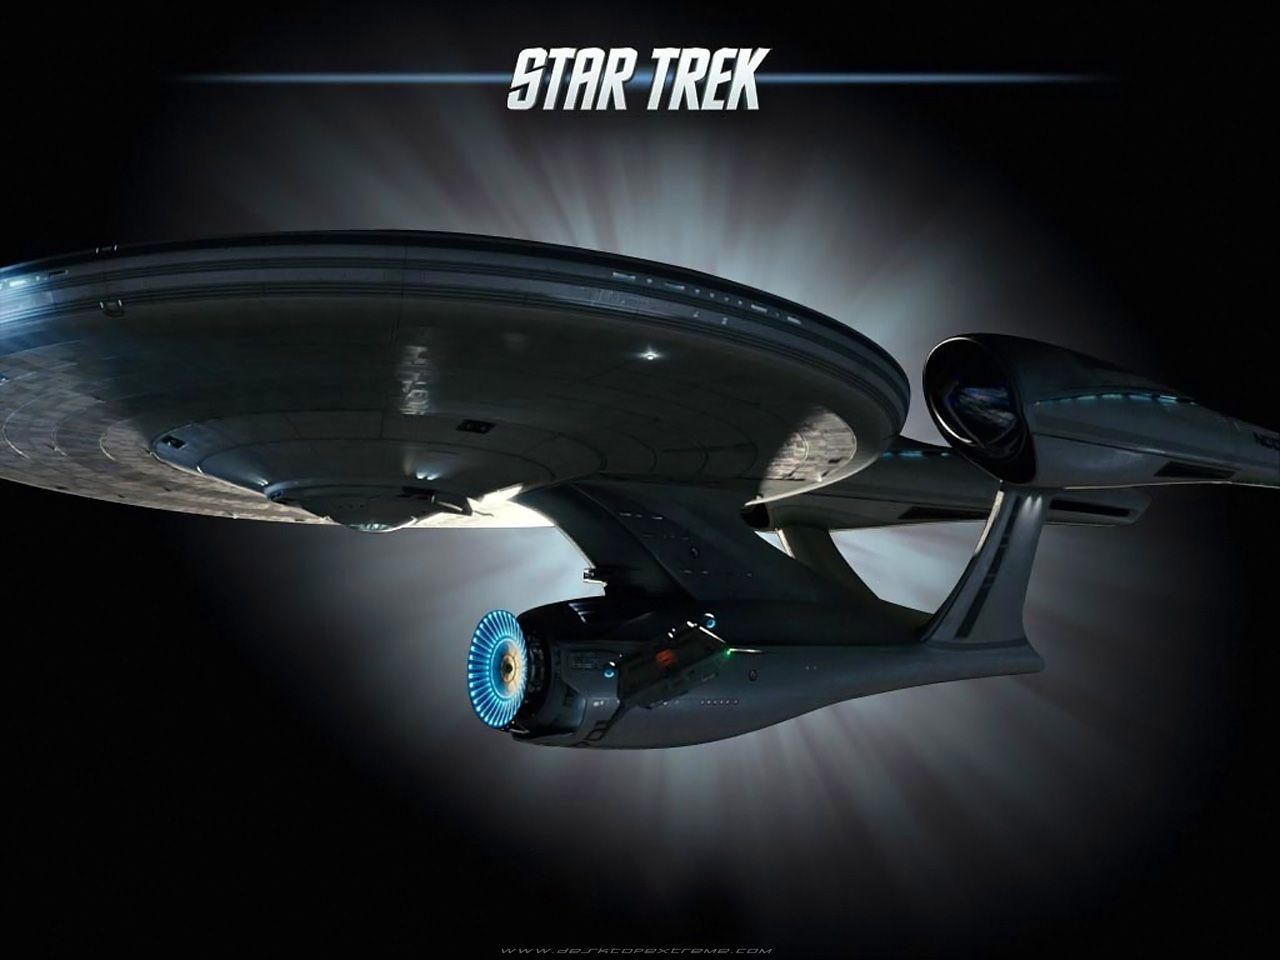 Star Trek Enterprise Wallpaper 1280×960. Star Trek Wallpaper